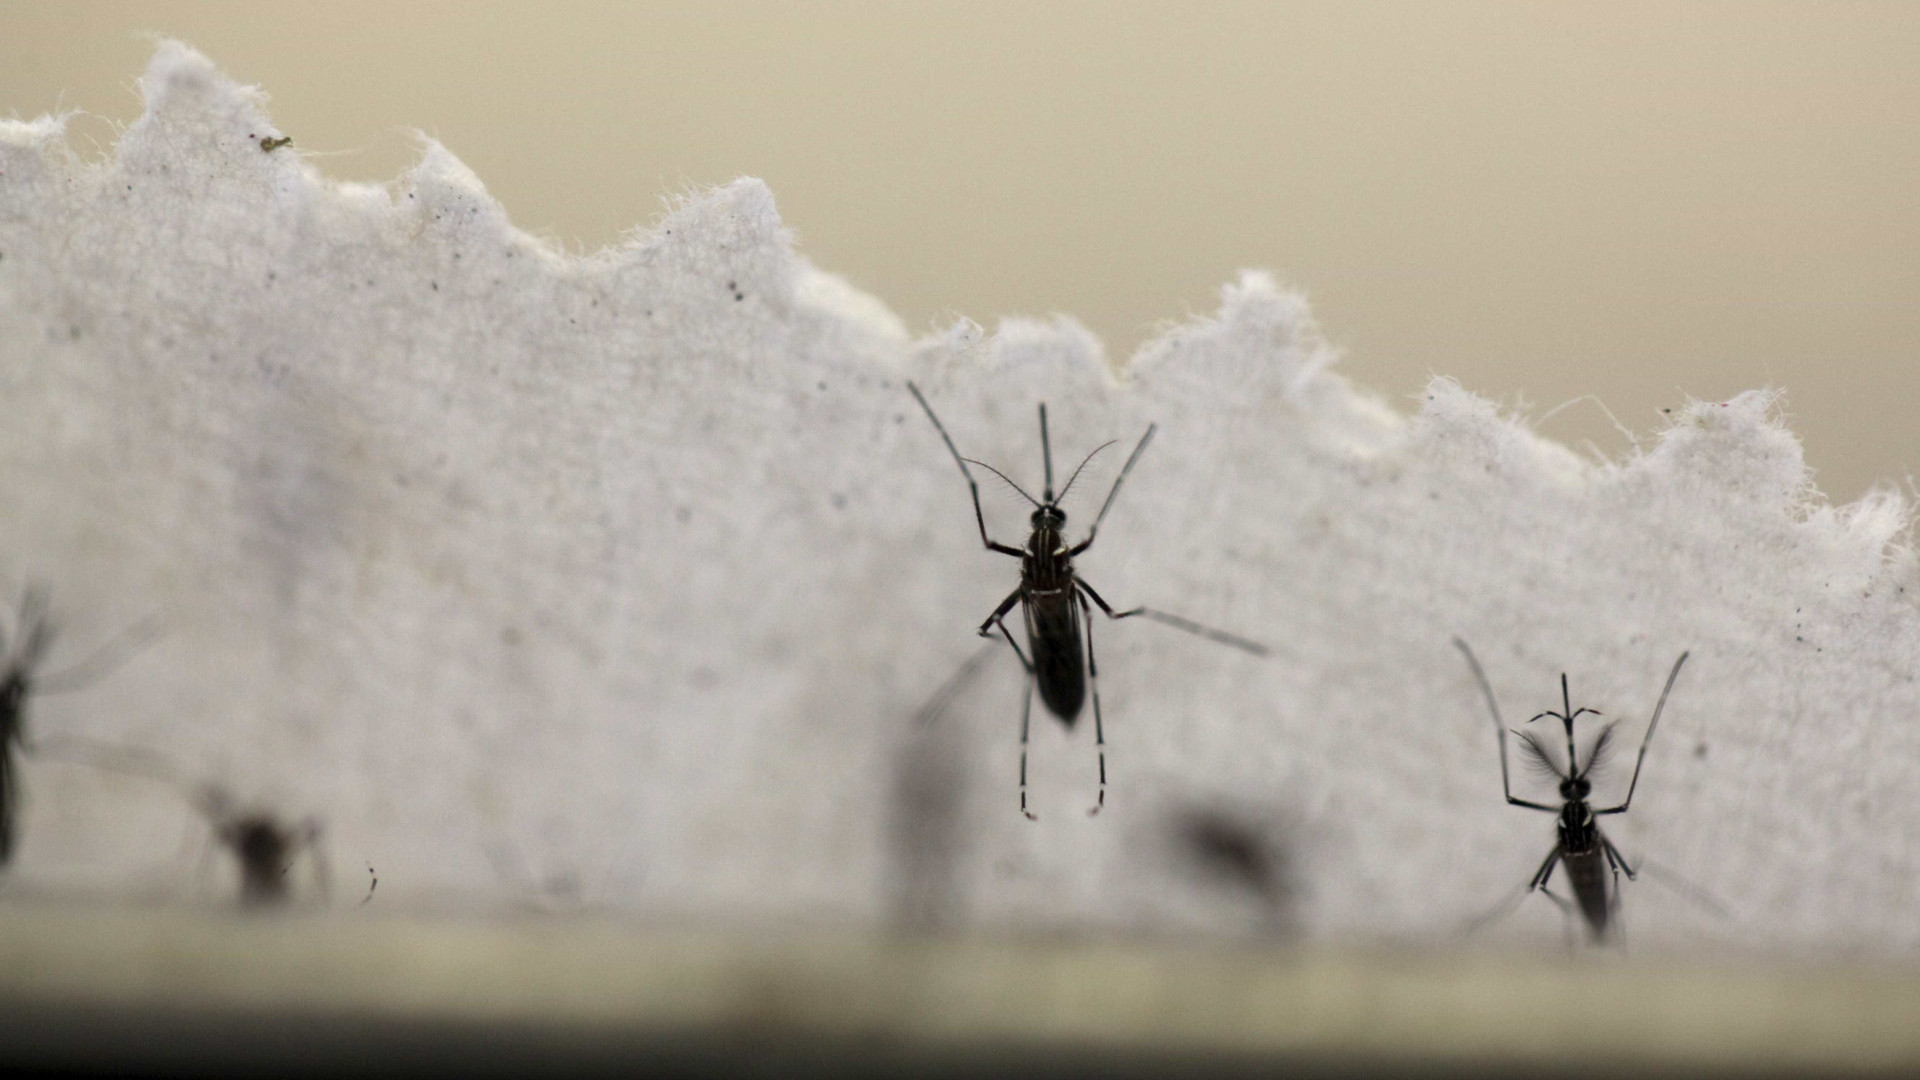 Falta inseticida para combater o mosquito da dengue, zika e chikungunya